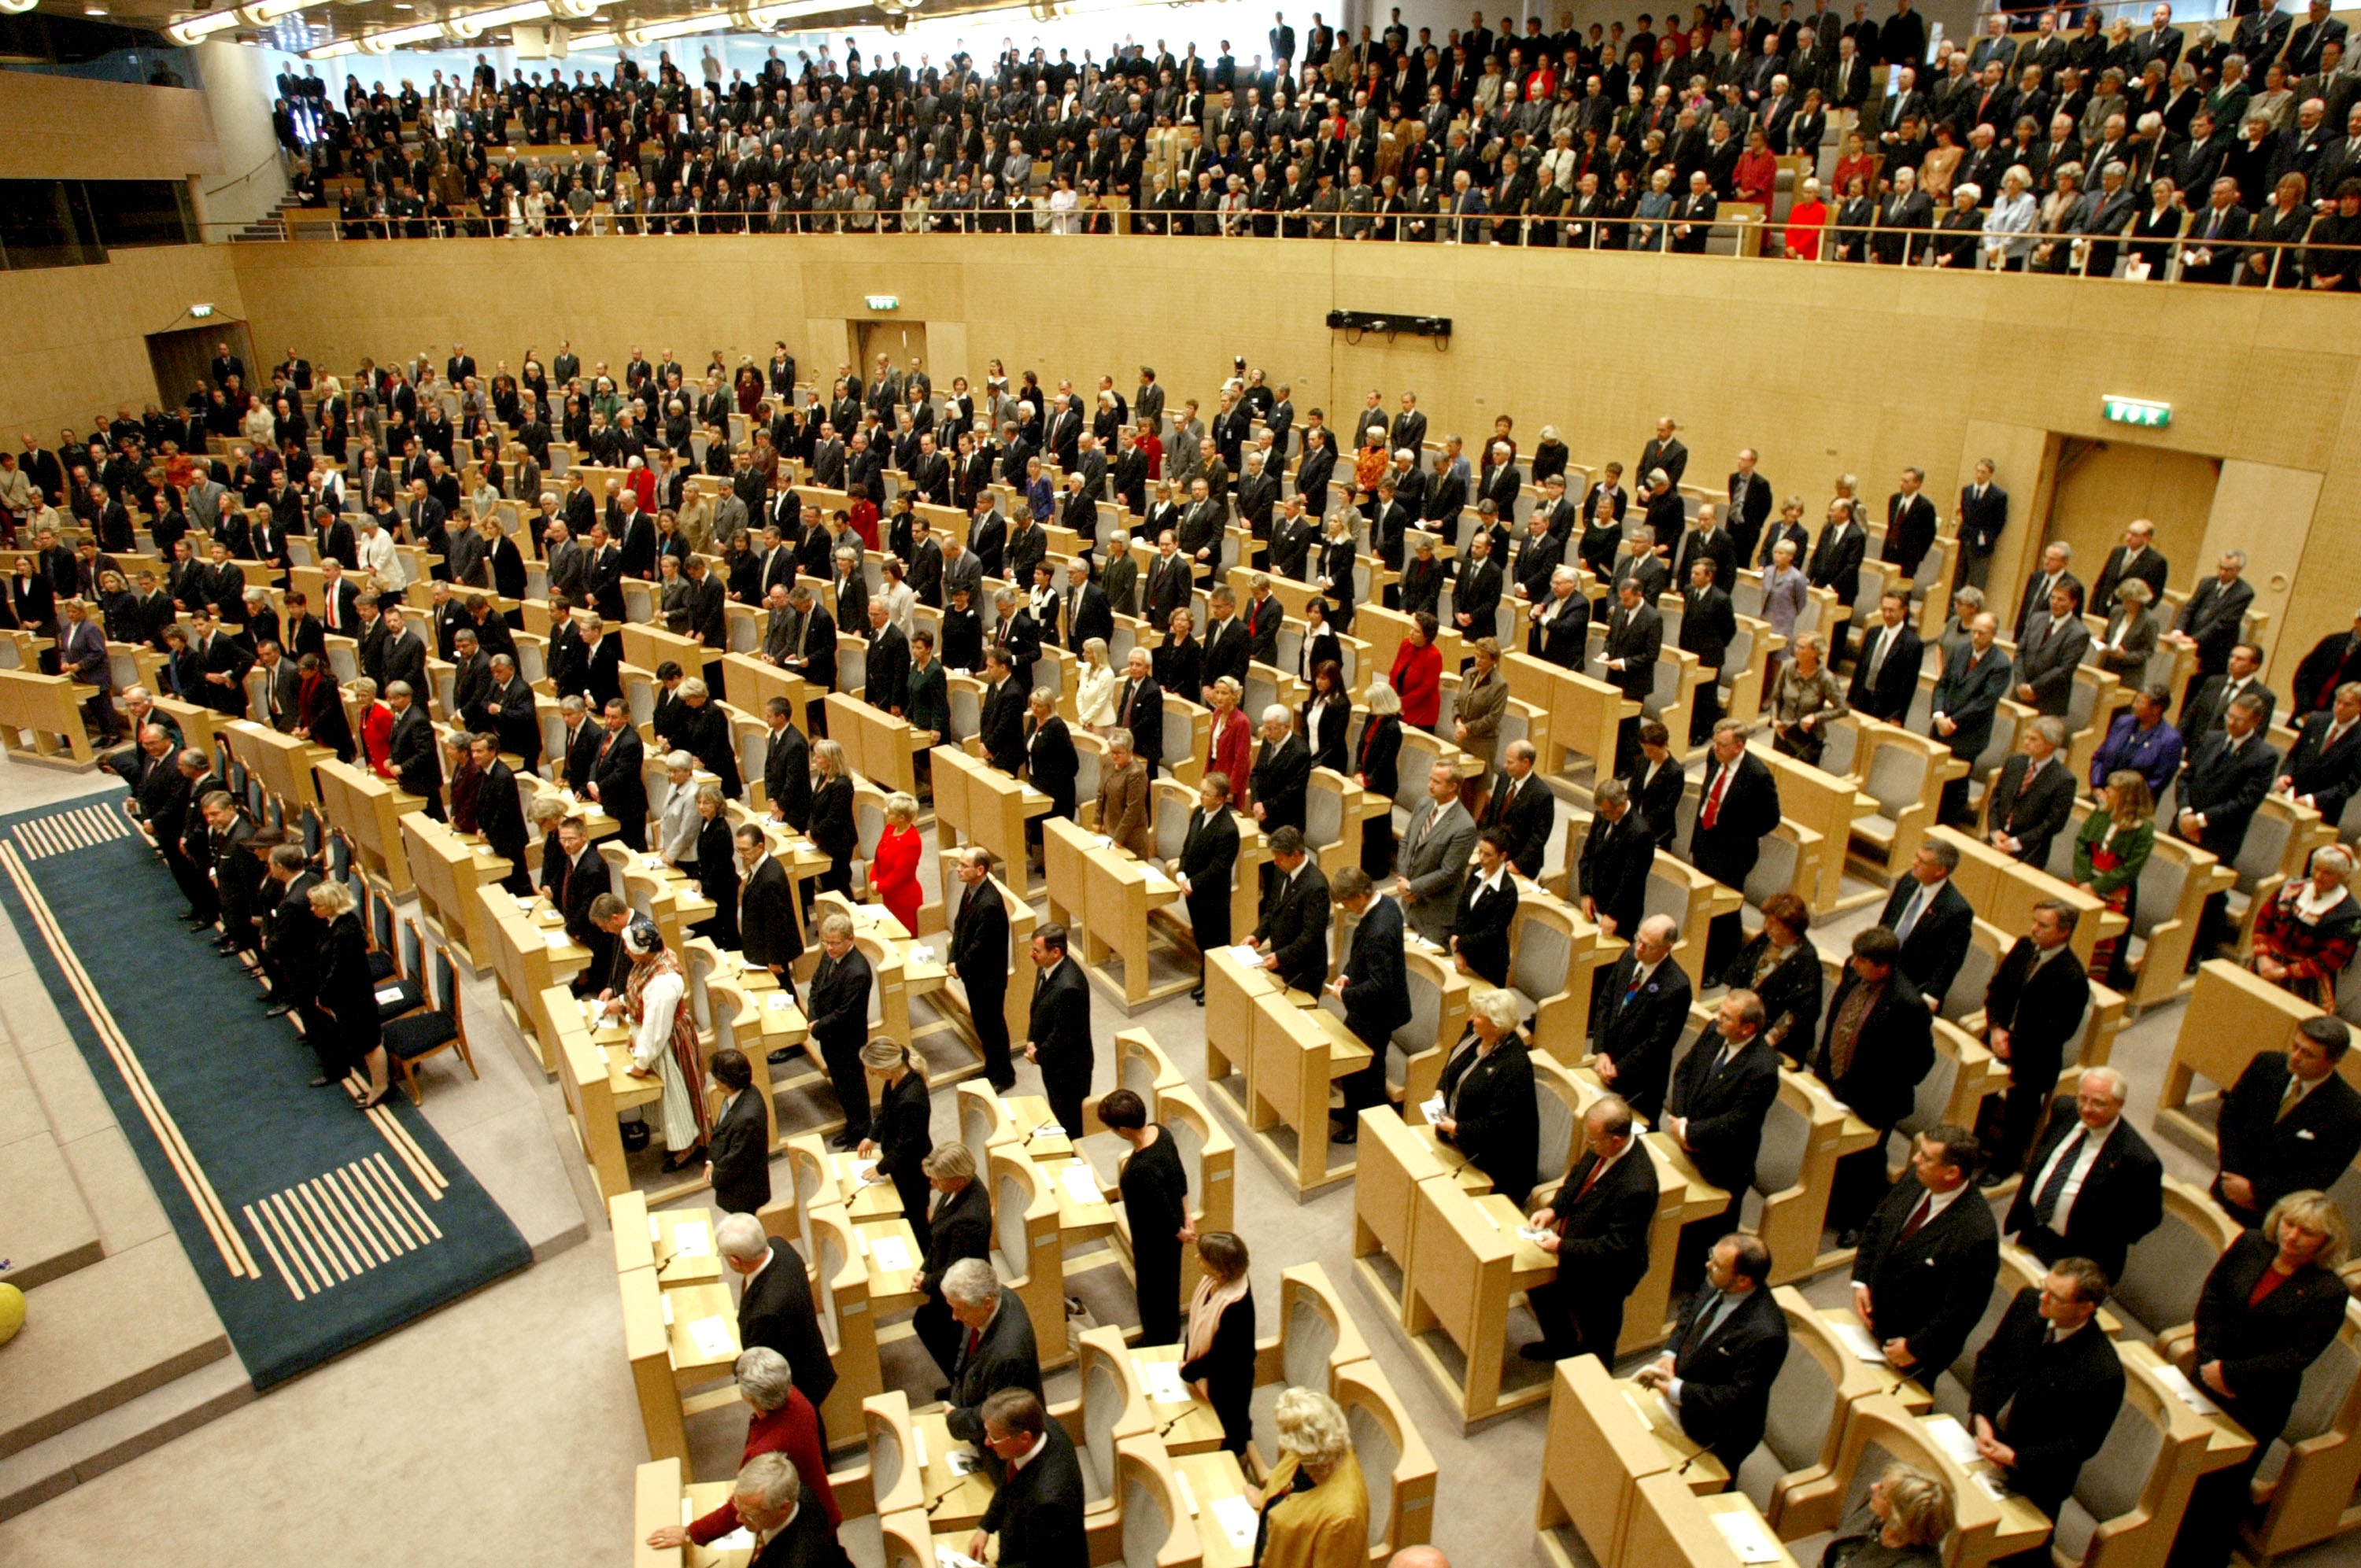 Maktkamp24, Politik, Regeringen, Sveriges sexigaste politiker, Riksdagsvalet 2010